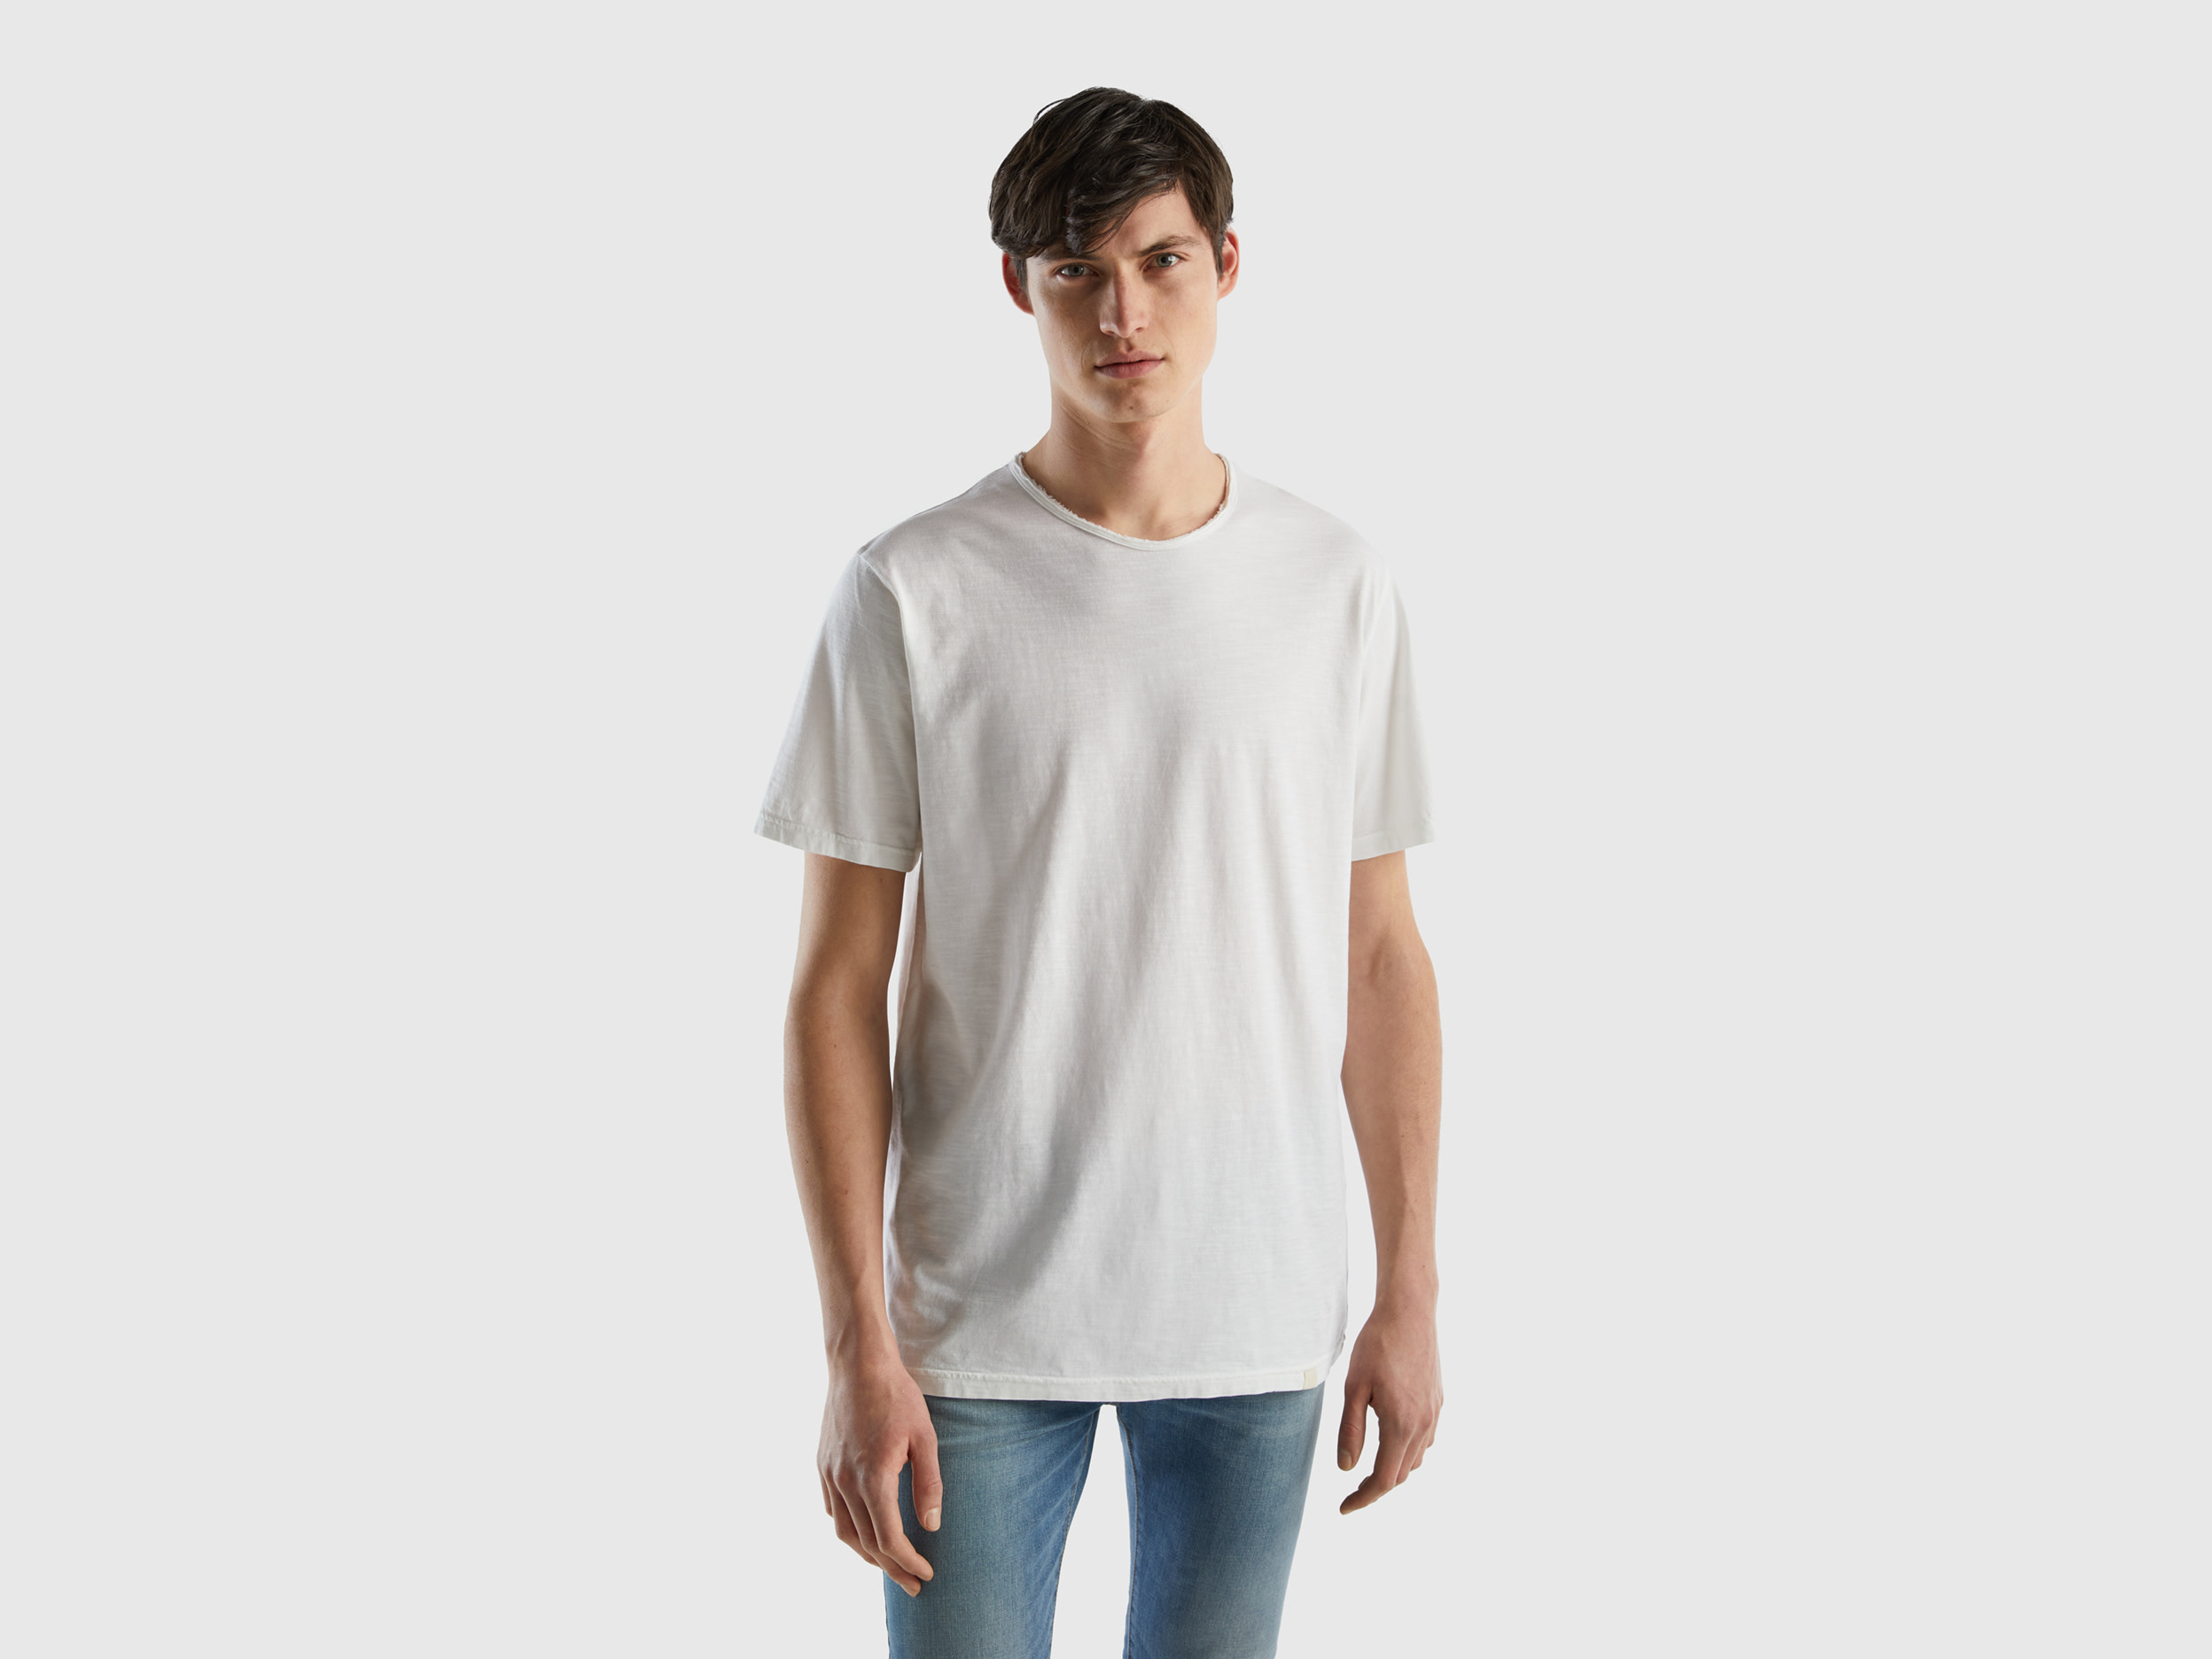 Benetton, White T-shirt In Slub Cotton, size XS, White, Men